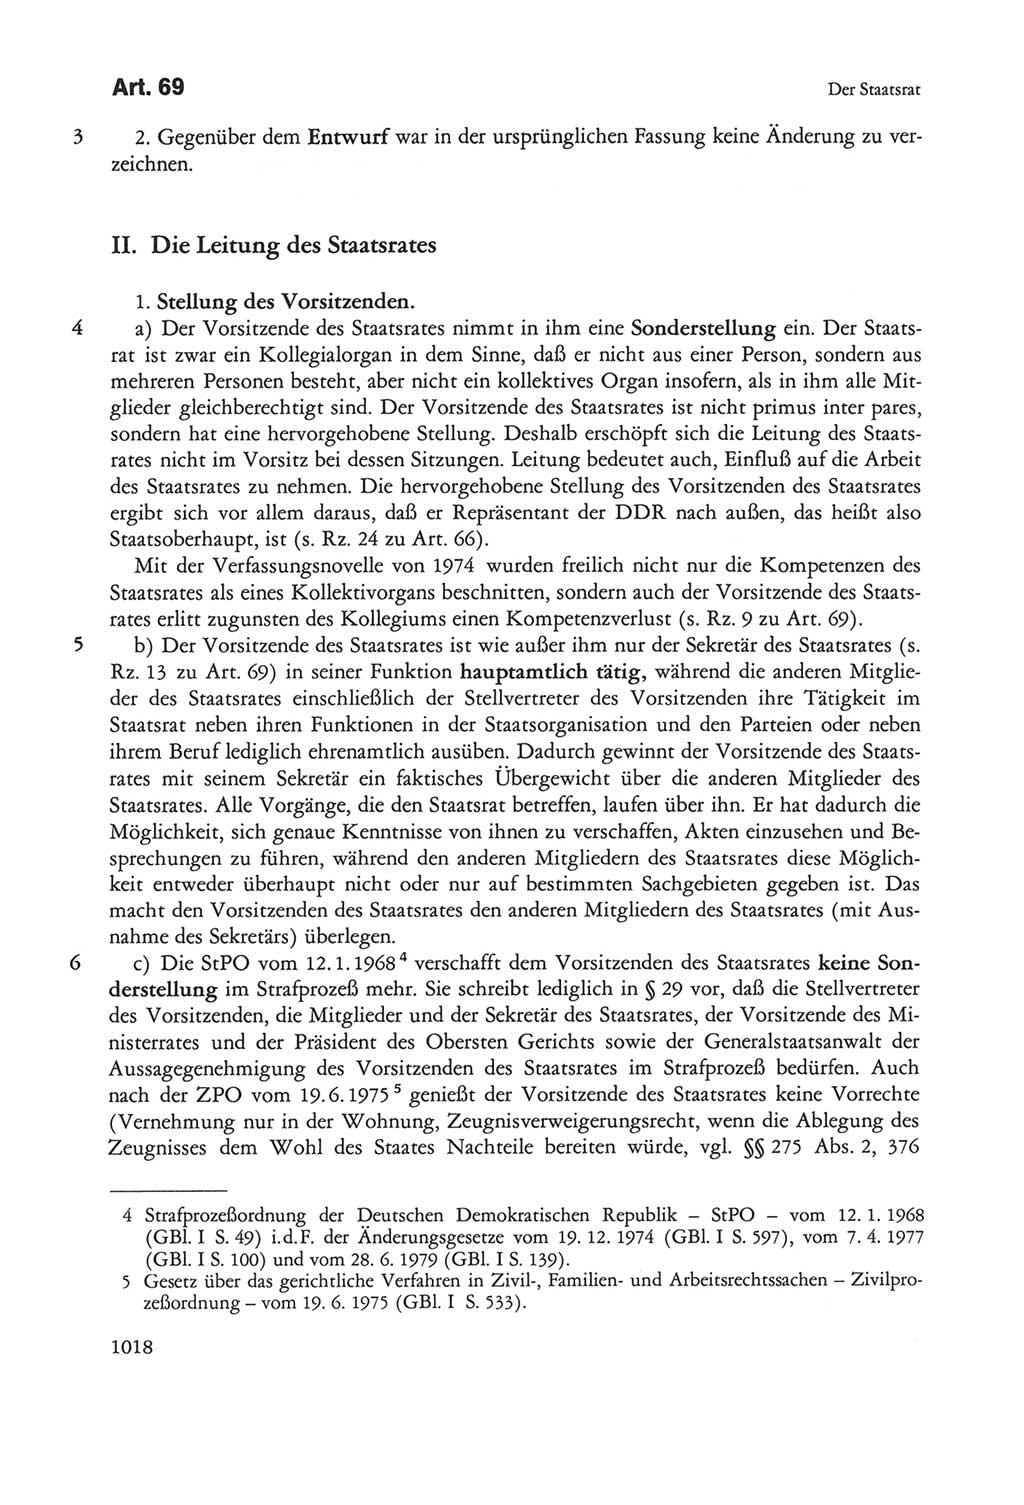 Die sozialistische Verfassung der Deutschen Demokratischen Republik (DDR), Kommentar 1982, Seite 1018 (Soz. Verf. DDR Komm. 1982, S. 1018)